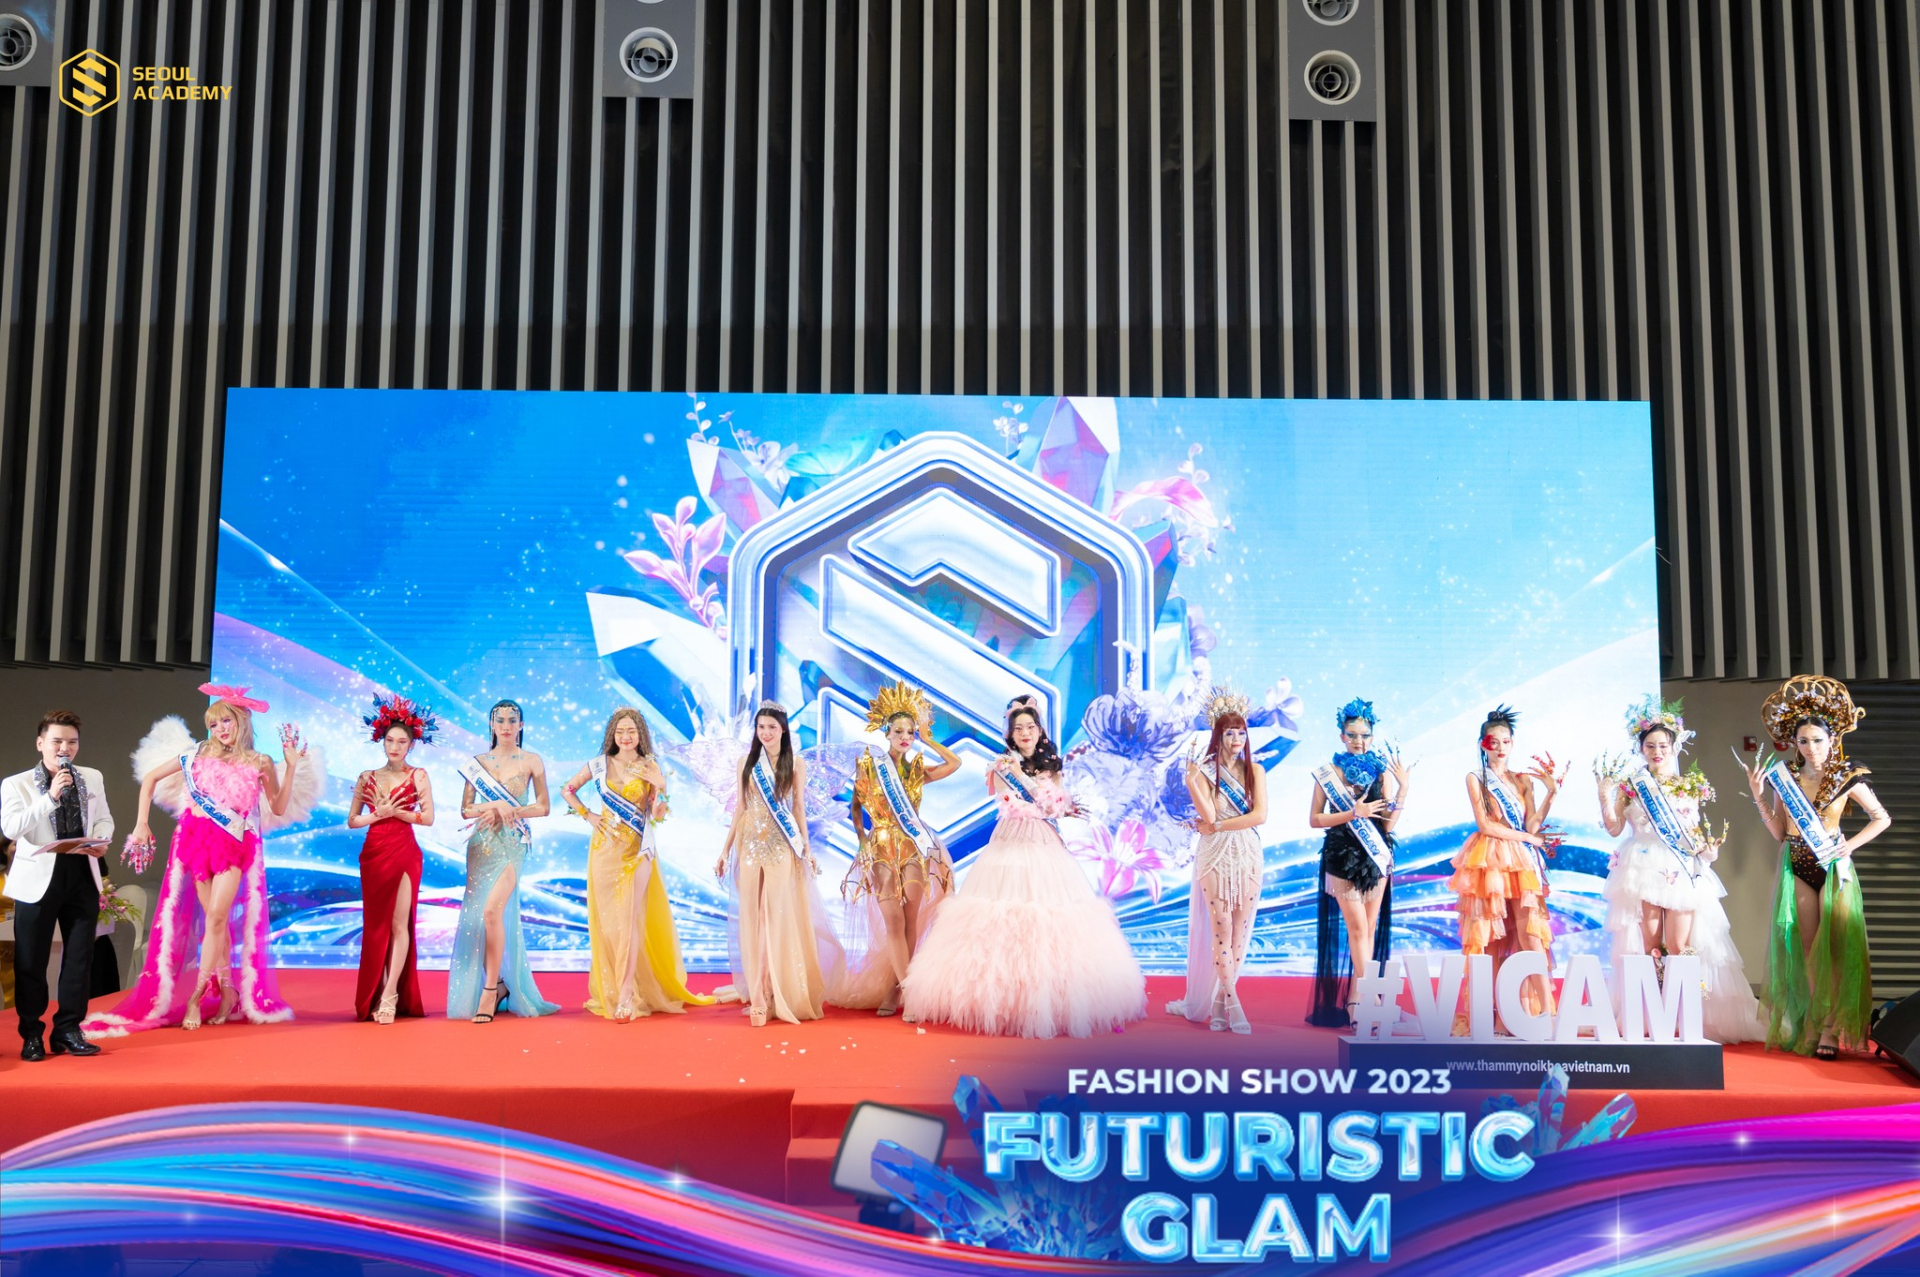 Học viên Seoul Academy bùng nổ với tiết mục Fashion Show Futuristic Glam tại VICAM 2023 - ảnh 3